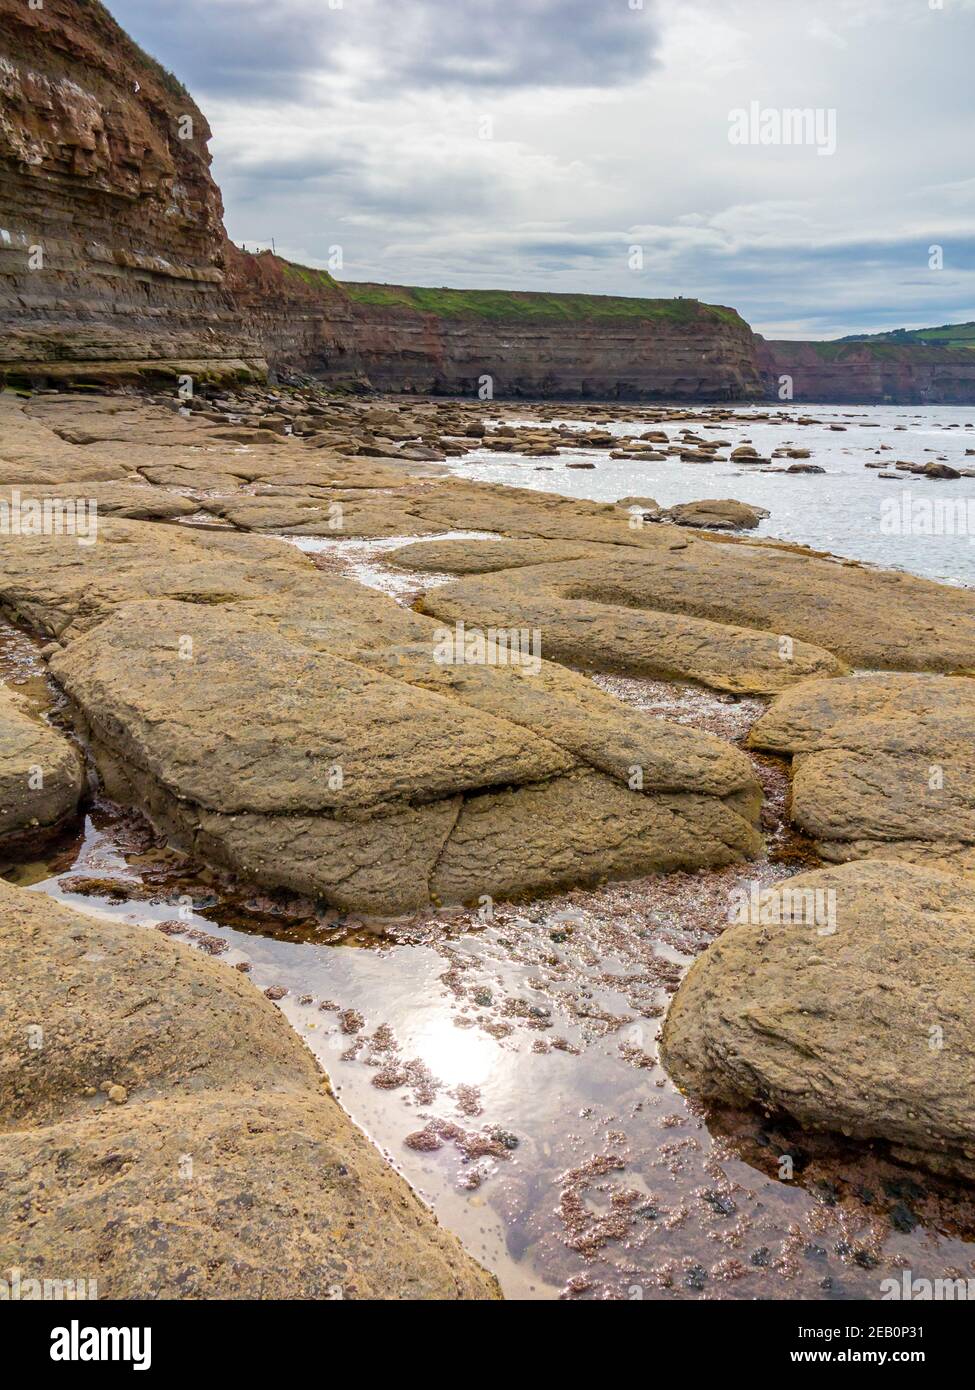 Rock piscines sur la plage à Staithes un village La côte nord du Yorkshire dans le nord-est de l'Angleterre au Royaume-Uni Banque D'Images